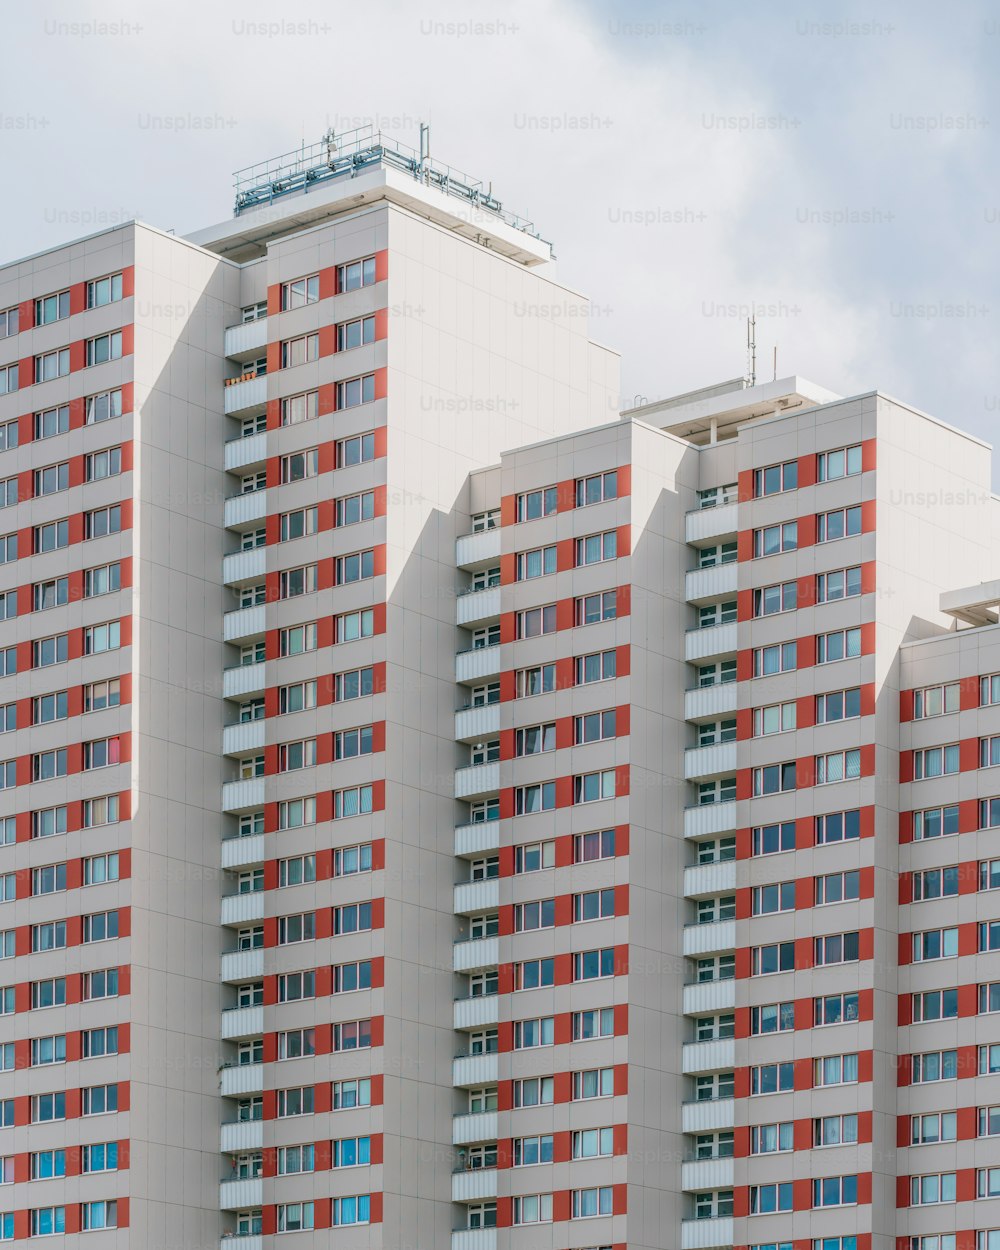 Un alto edificio bianco con finestre rosse e blu